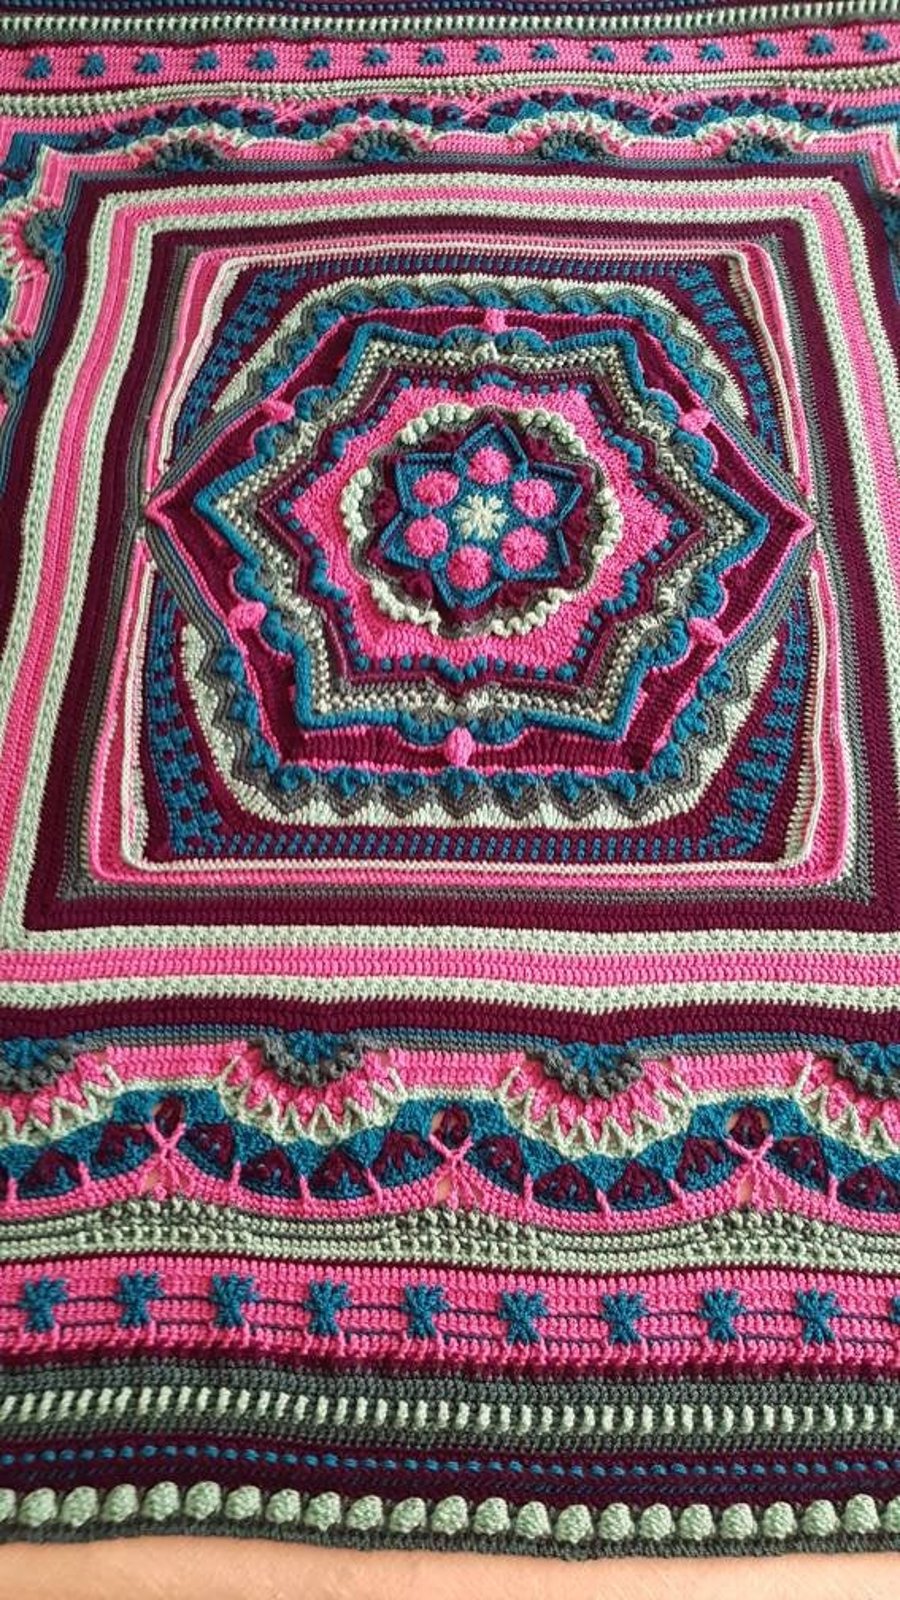 Handmade crochet blanketthrowAfghan, peacock colour theme MEASURES 56" X 61" 